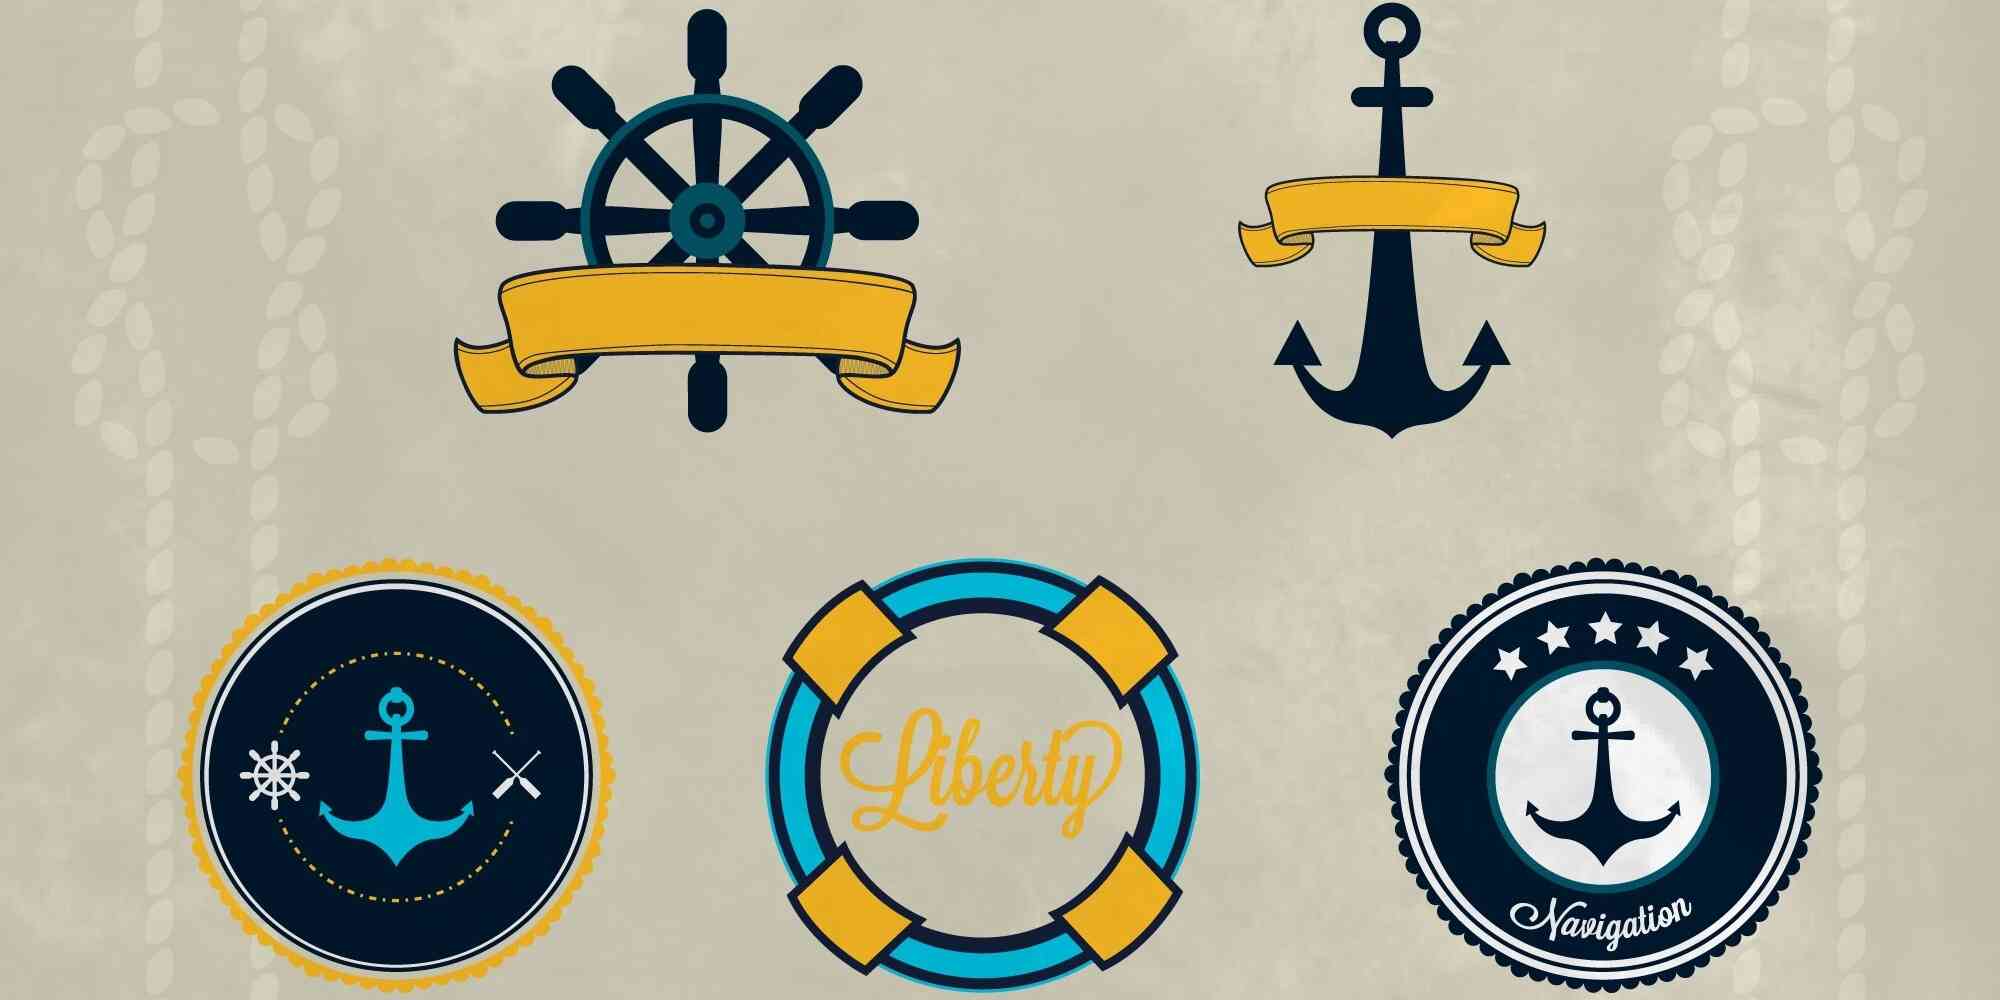 锚标志、船舵和桨的标志组合在一起，形成了一个独特的海洋主题图案。它们代表着航海和航行的重要角色，象征着冒险与探索的精神。这些元素交织在一起，展现出一种强烈的生命力，让人们感受到大海的神秘魅力。